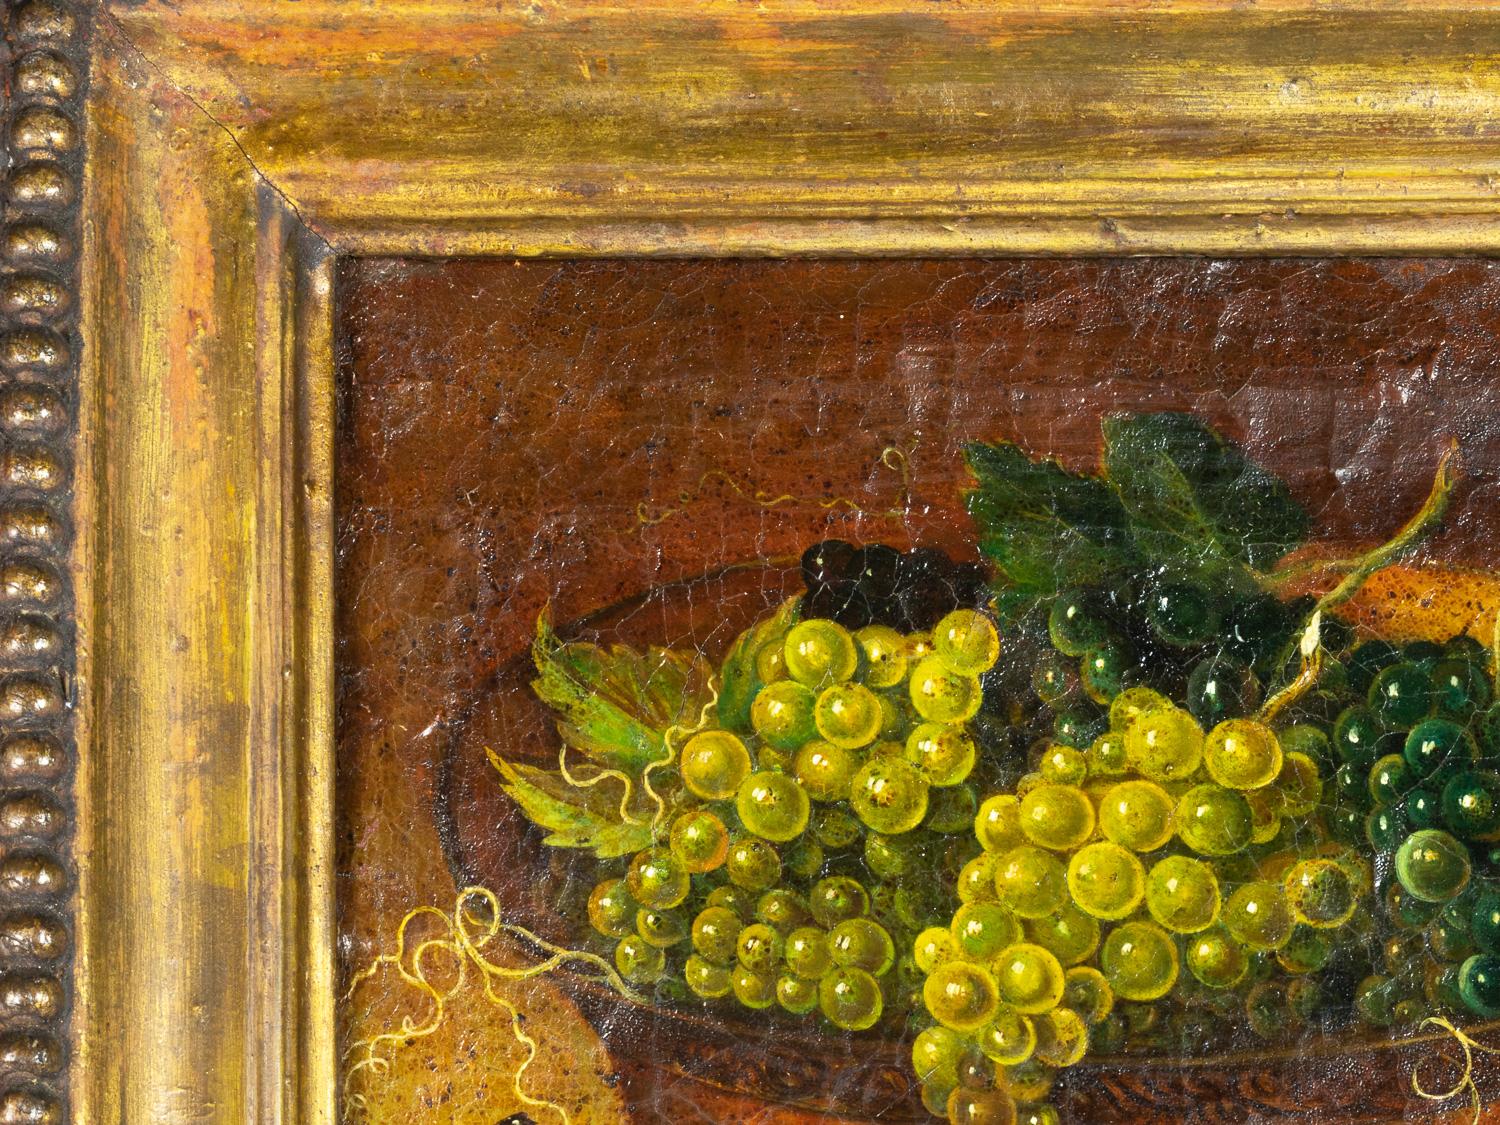 Dans cette nature morte peinte au XIXe siècle, un large bol débordant de raisins occupe le devant de la scène. L'artiste s'est inspiré du style provençal pittoresque, ce qui a donné lieu à une scène captivante.

Cadre 52 x 45 cm
Toile 40 x 31 cm